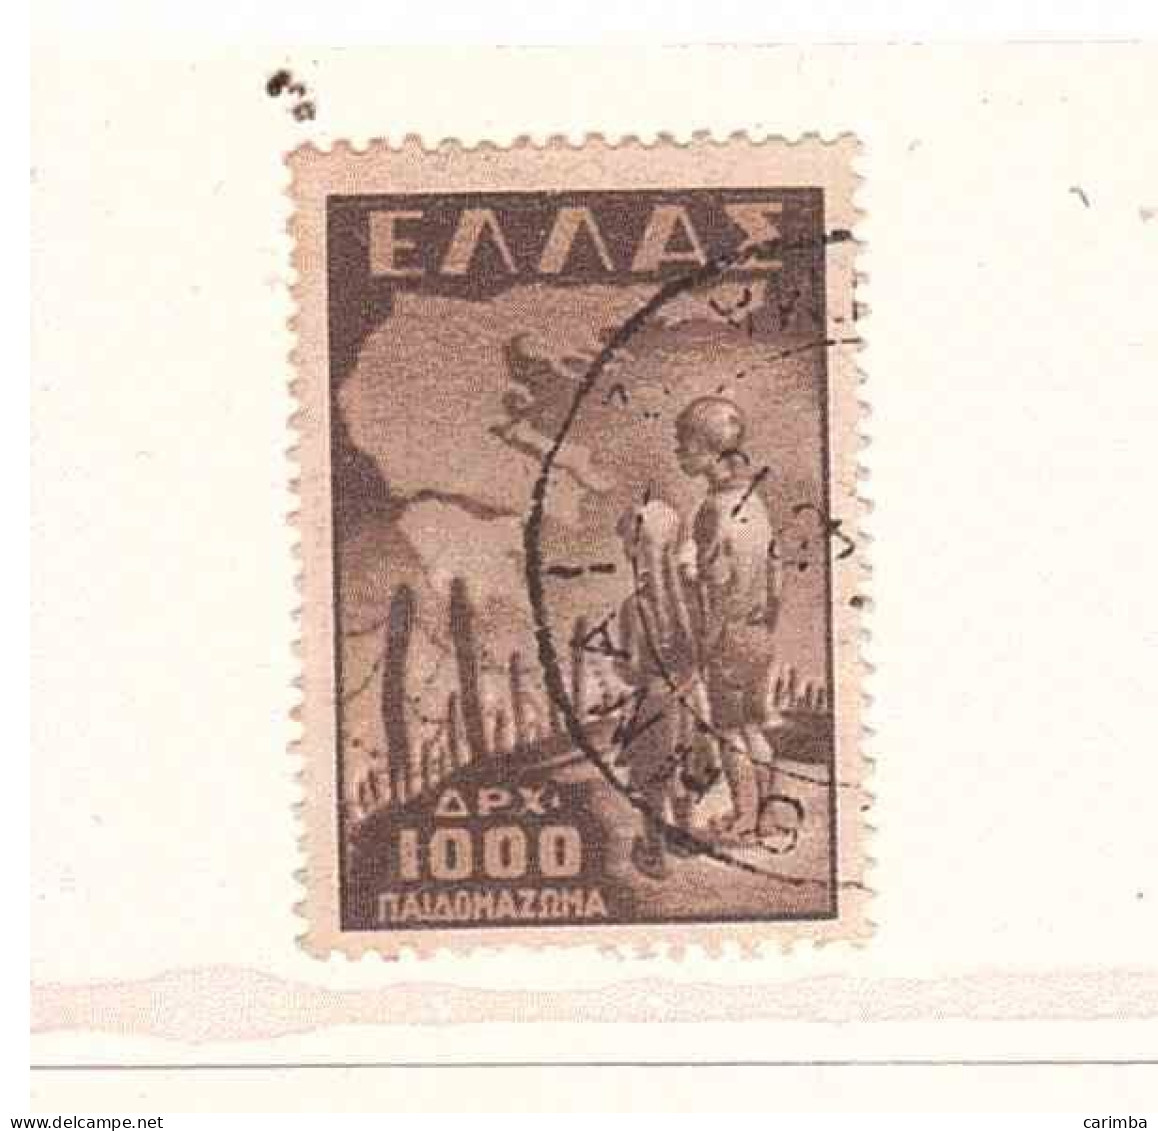 1949 APX 1000 INFANZIA DEPORTATA - Usados